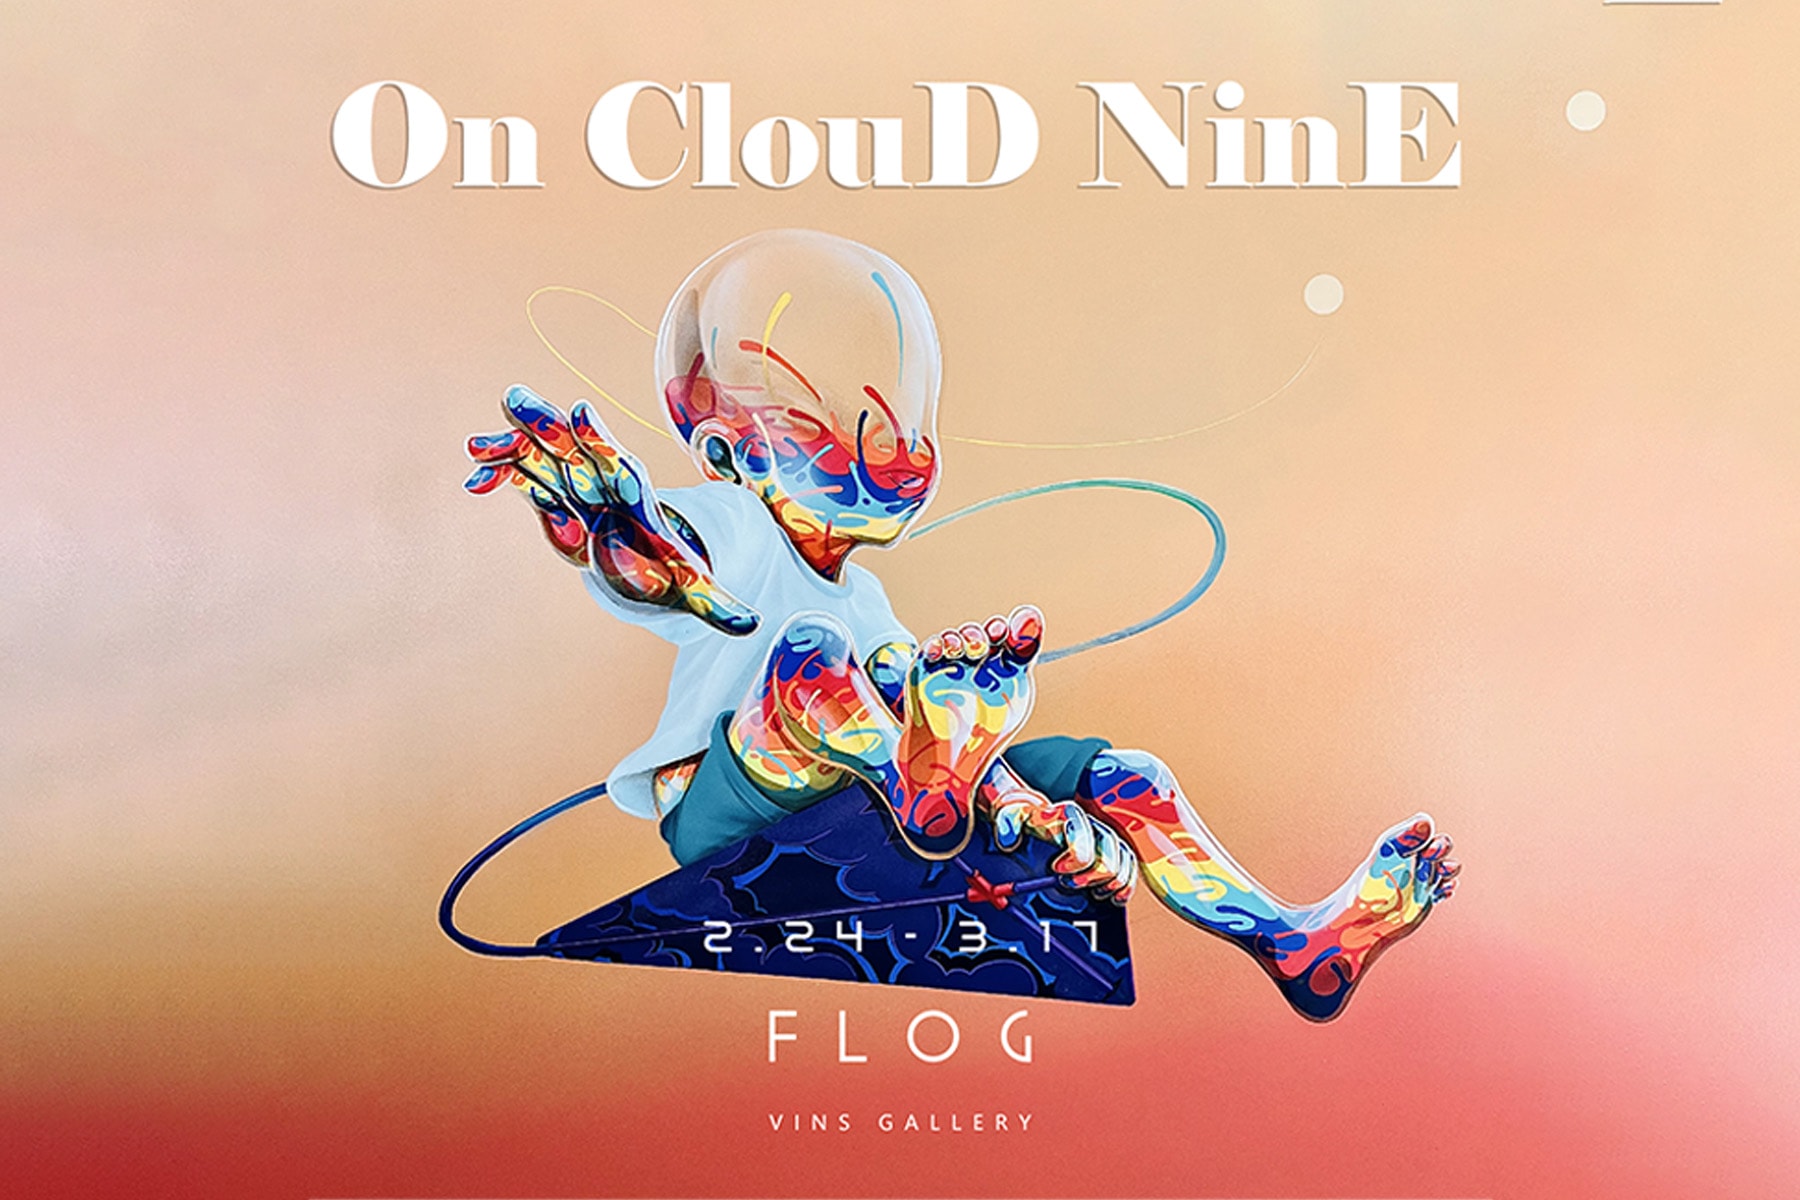 法國藝術家 Flog 全新個展《On Cloud Nine》即將展開